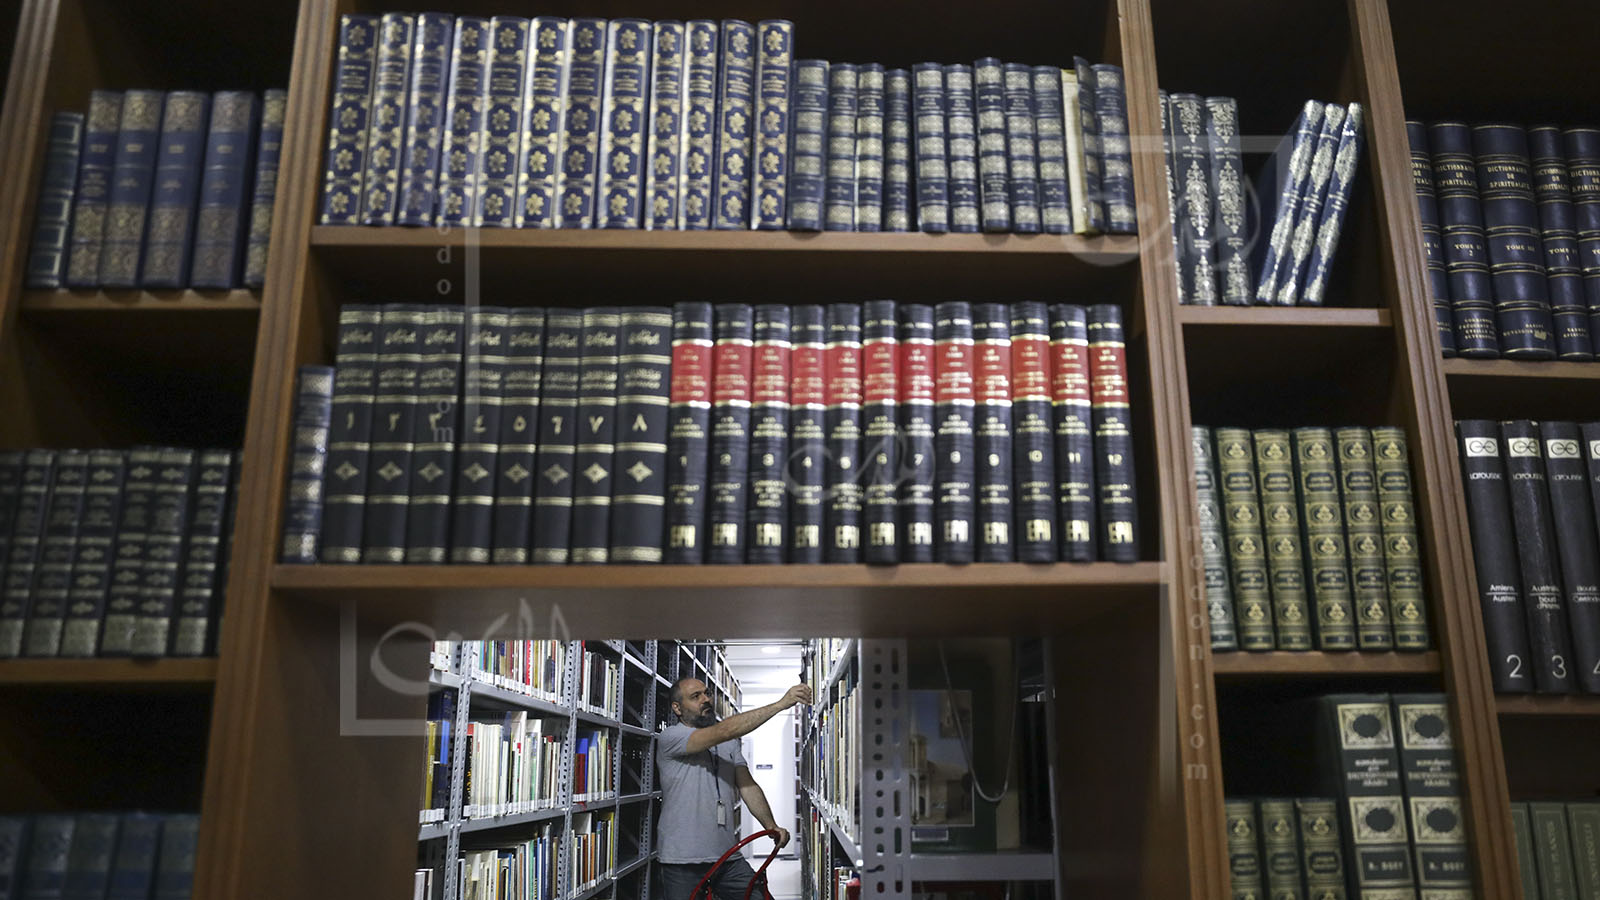 مكتبة "الكسليك" تؤرشف الكتب والذاكرة ومنازل لبنان الكثيرة